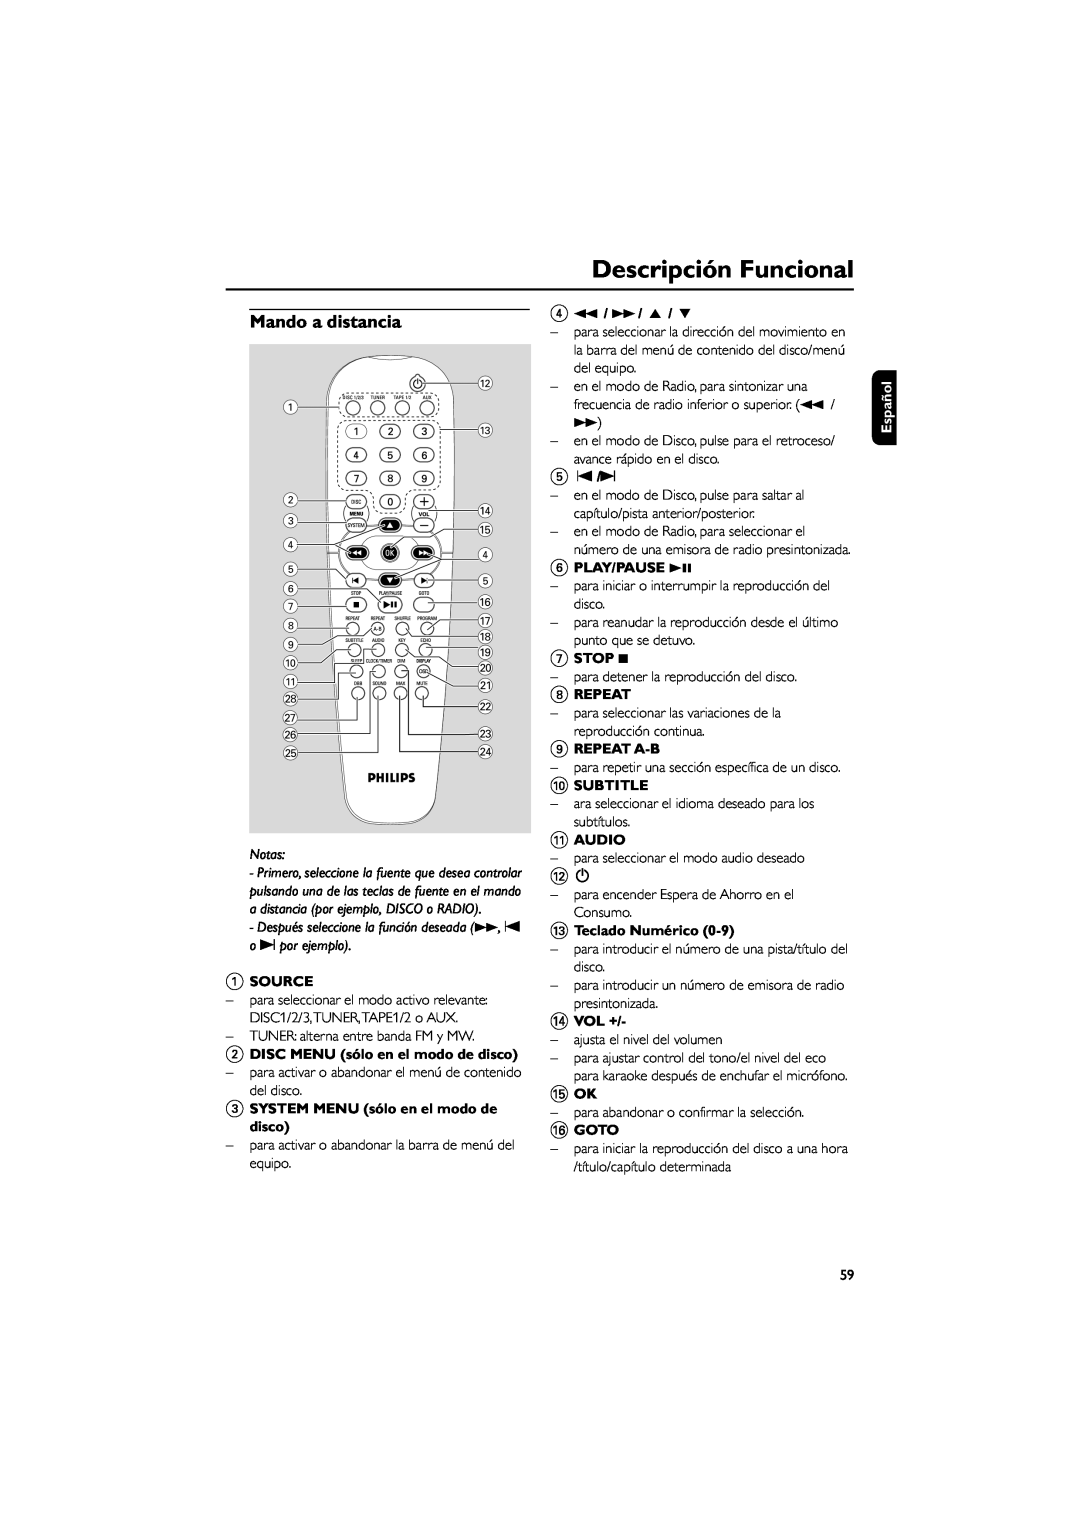 Philips FWD792 user manual Mando a distancia, Descripción Funcional 